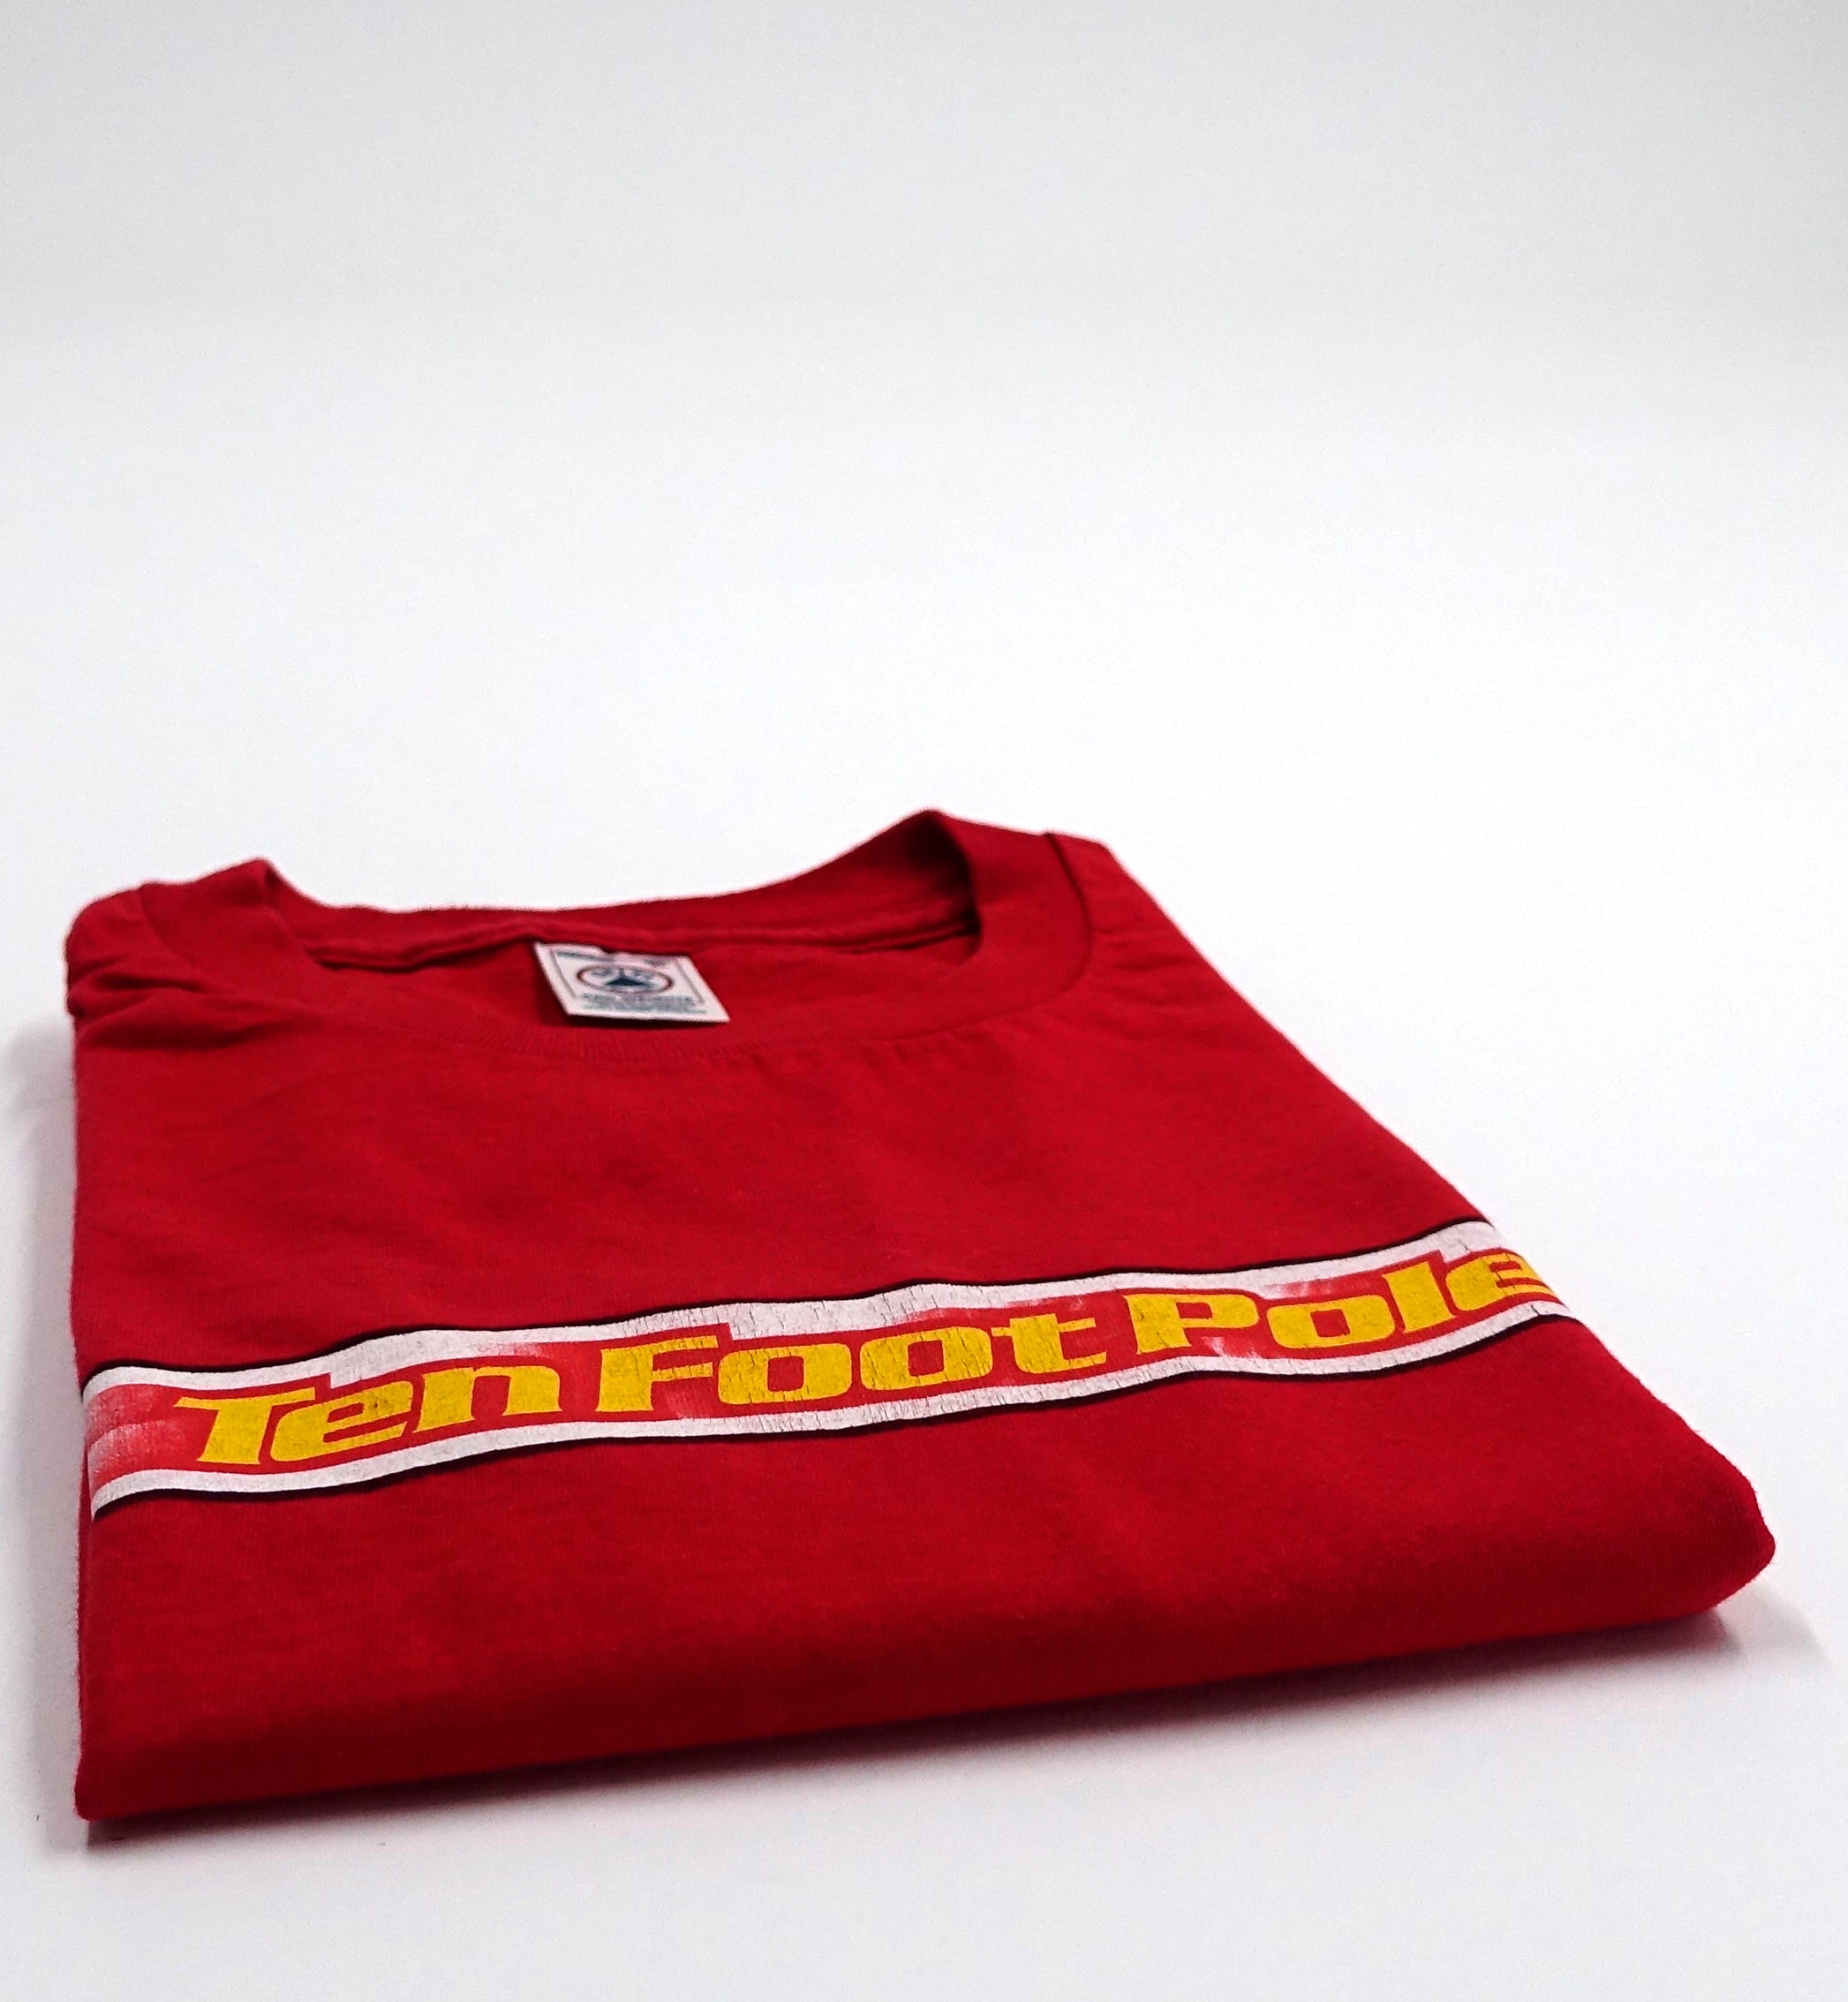 Ten Foot Pole ‎– Insider 1999 Tour Shirt Size XL